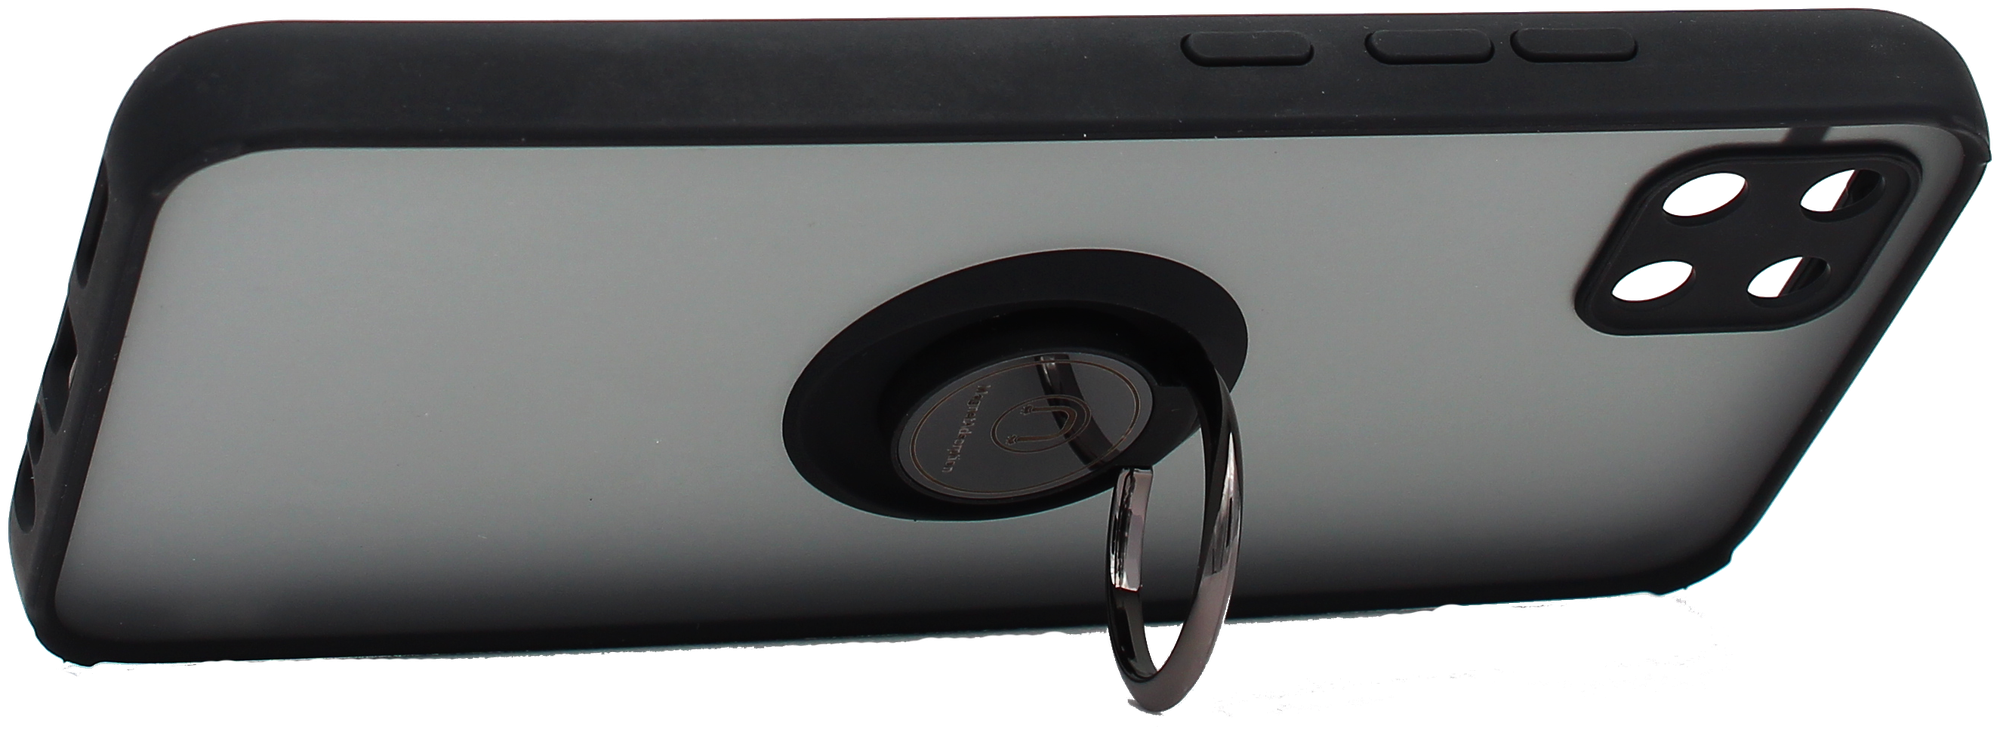 Чехол противоударный Mobix для Realme C11 2021, C20 ( Реалми С11 2021, С20 ) с кольцом и функцией подставки